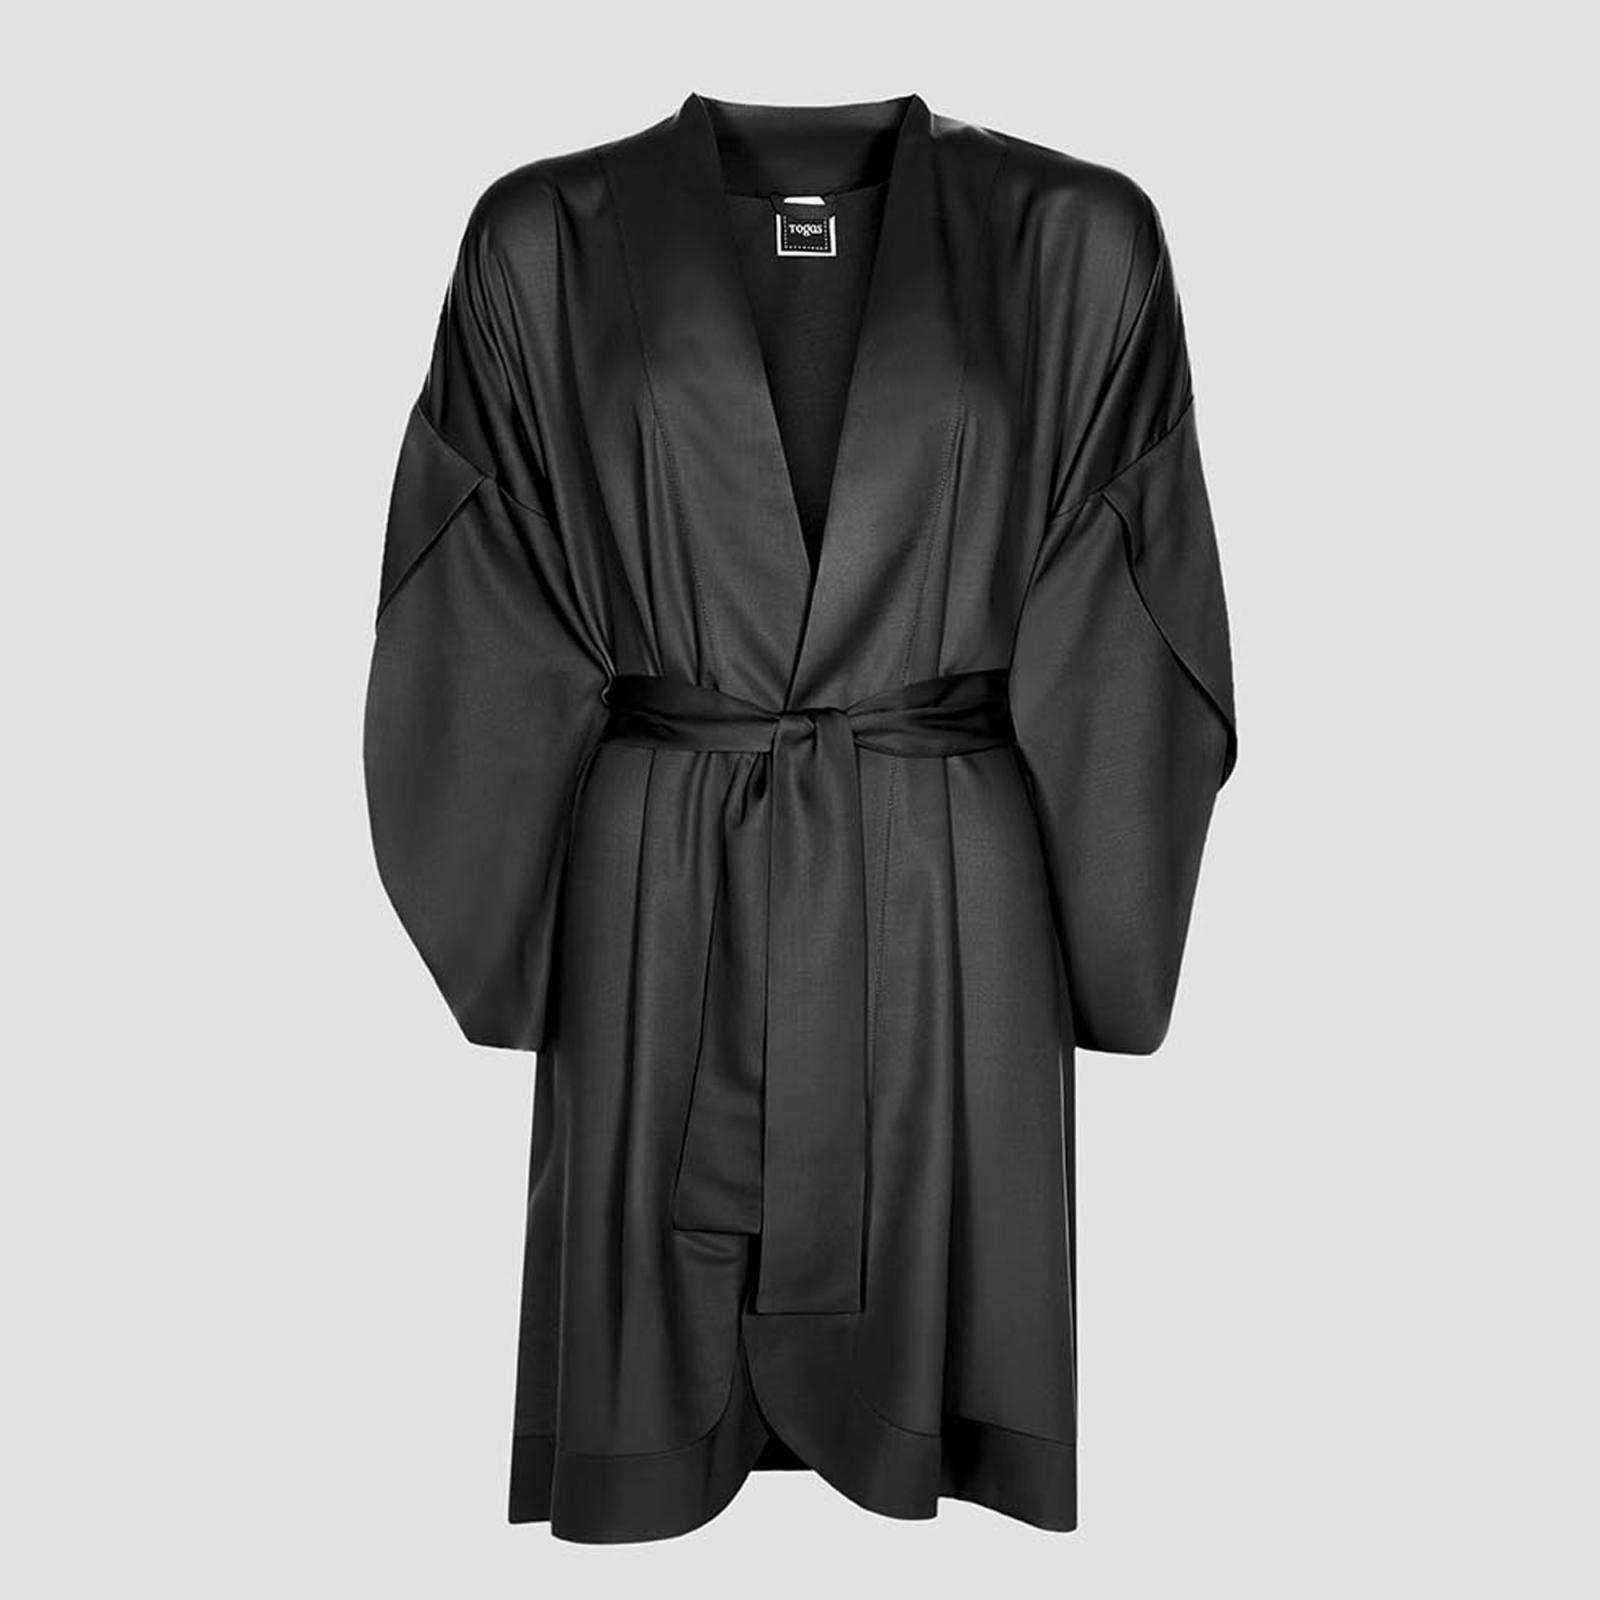 Халат-кимоно короткое Togas Наоми чёрное XXL (52) халат кимоно togas размер xxl розовый